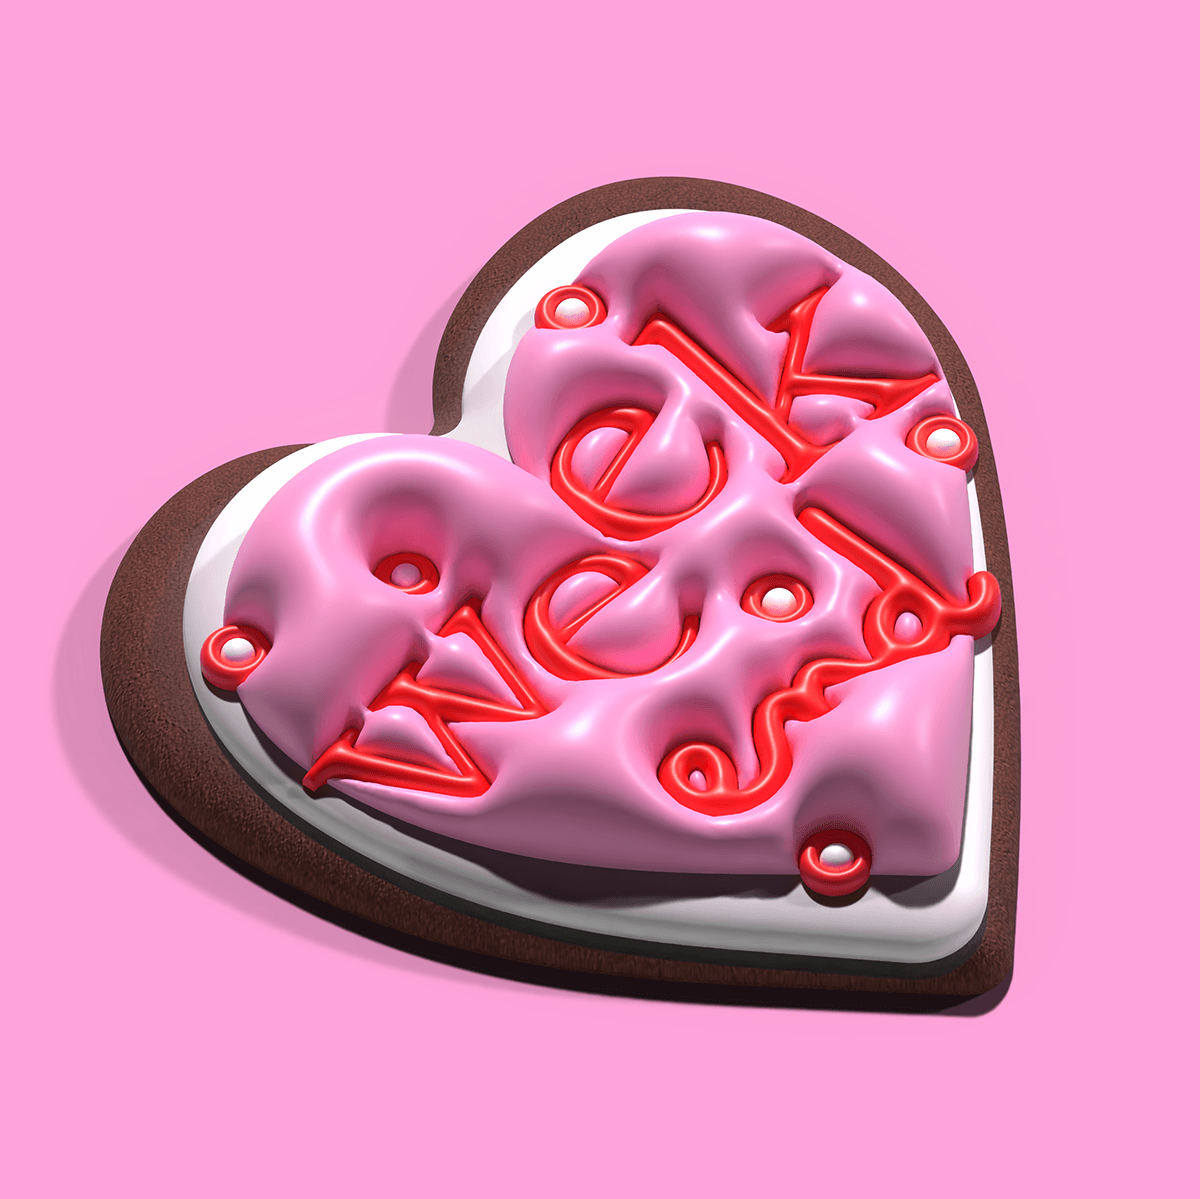 3D 3dillustrator cookie weekend 3dtypography pink Instagram Post